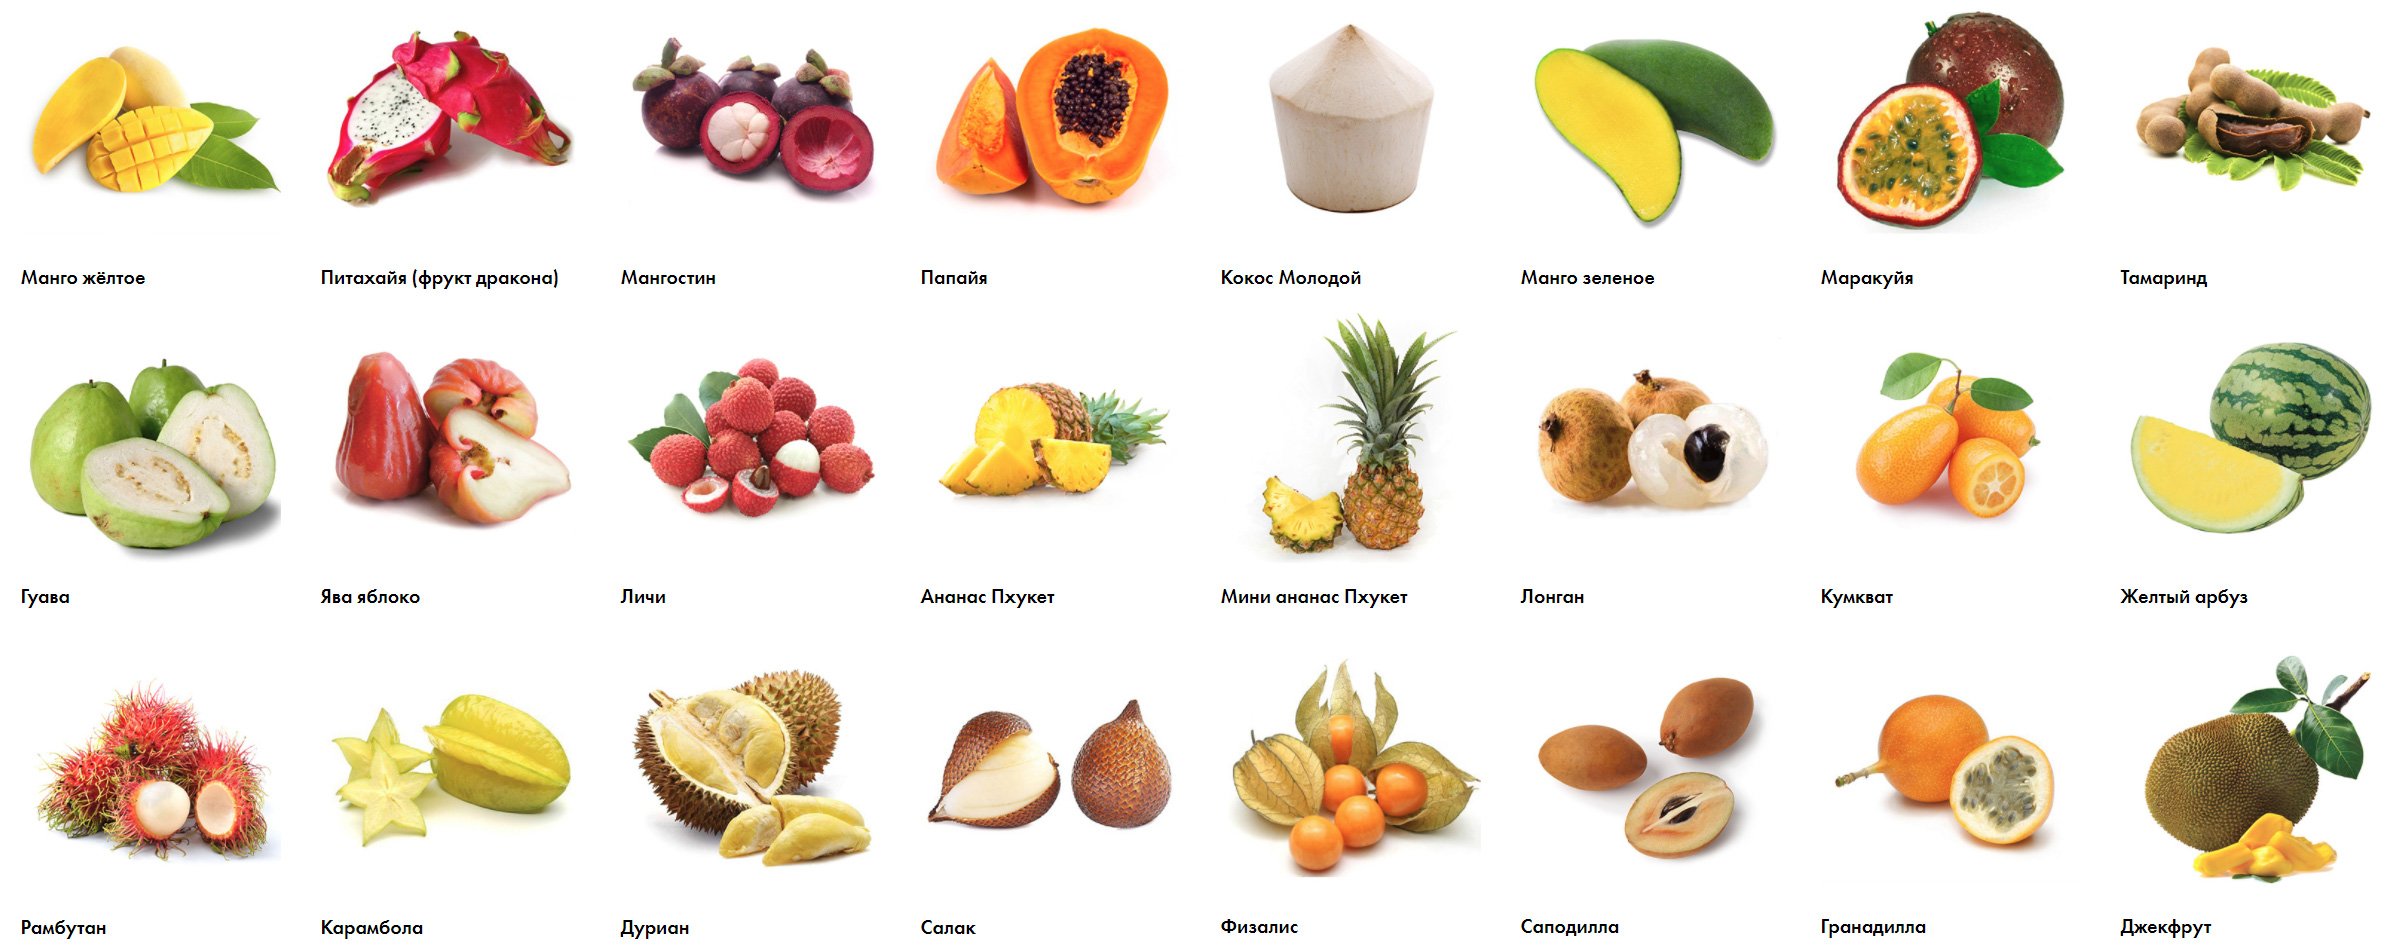 фрукты тайланда с названиями на русском